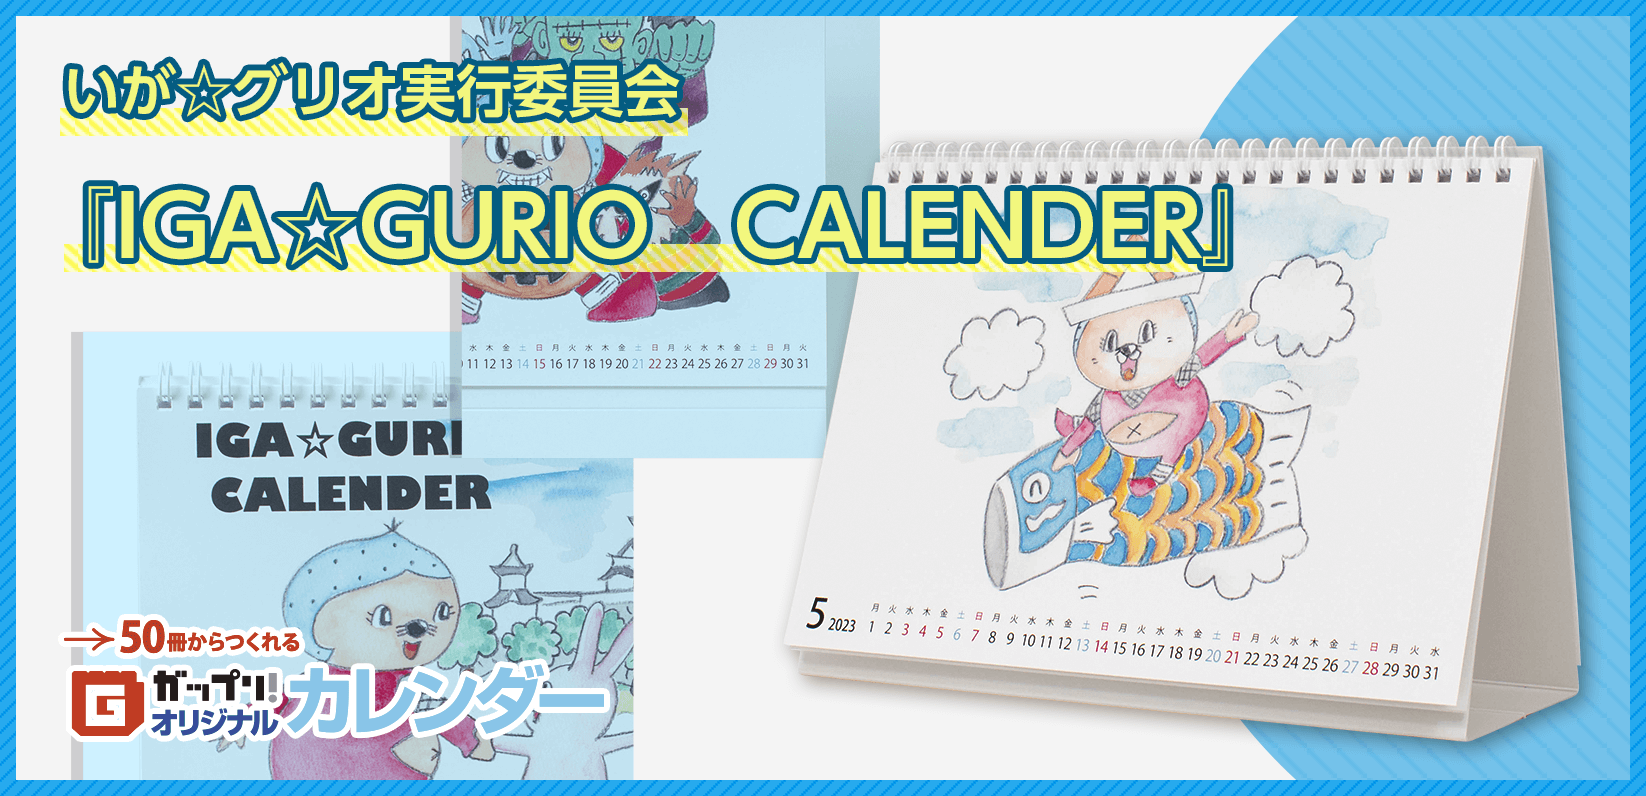 いが☆グリオ実行委員会様製作のオリジナルカレンダー「IGA☆GURIO　CALENDER」